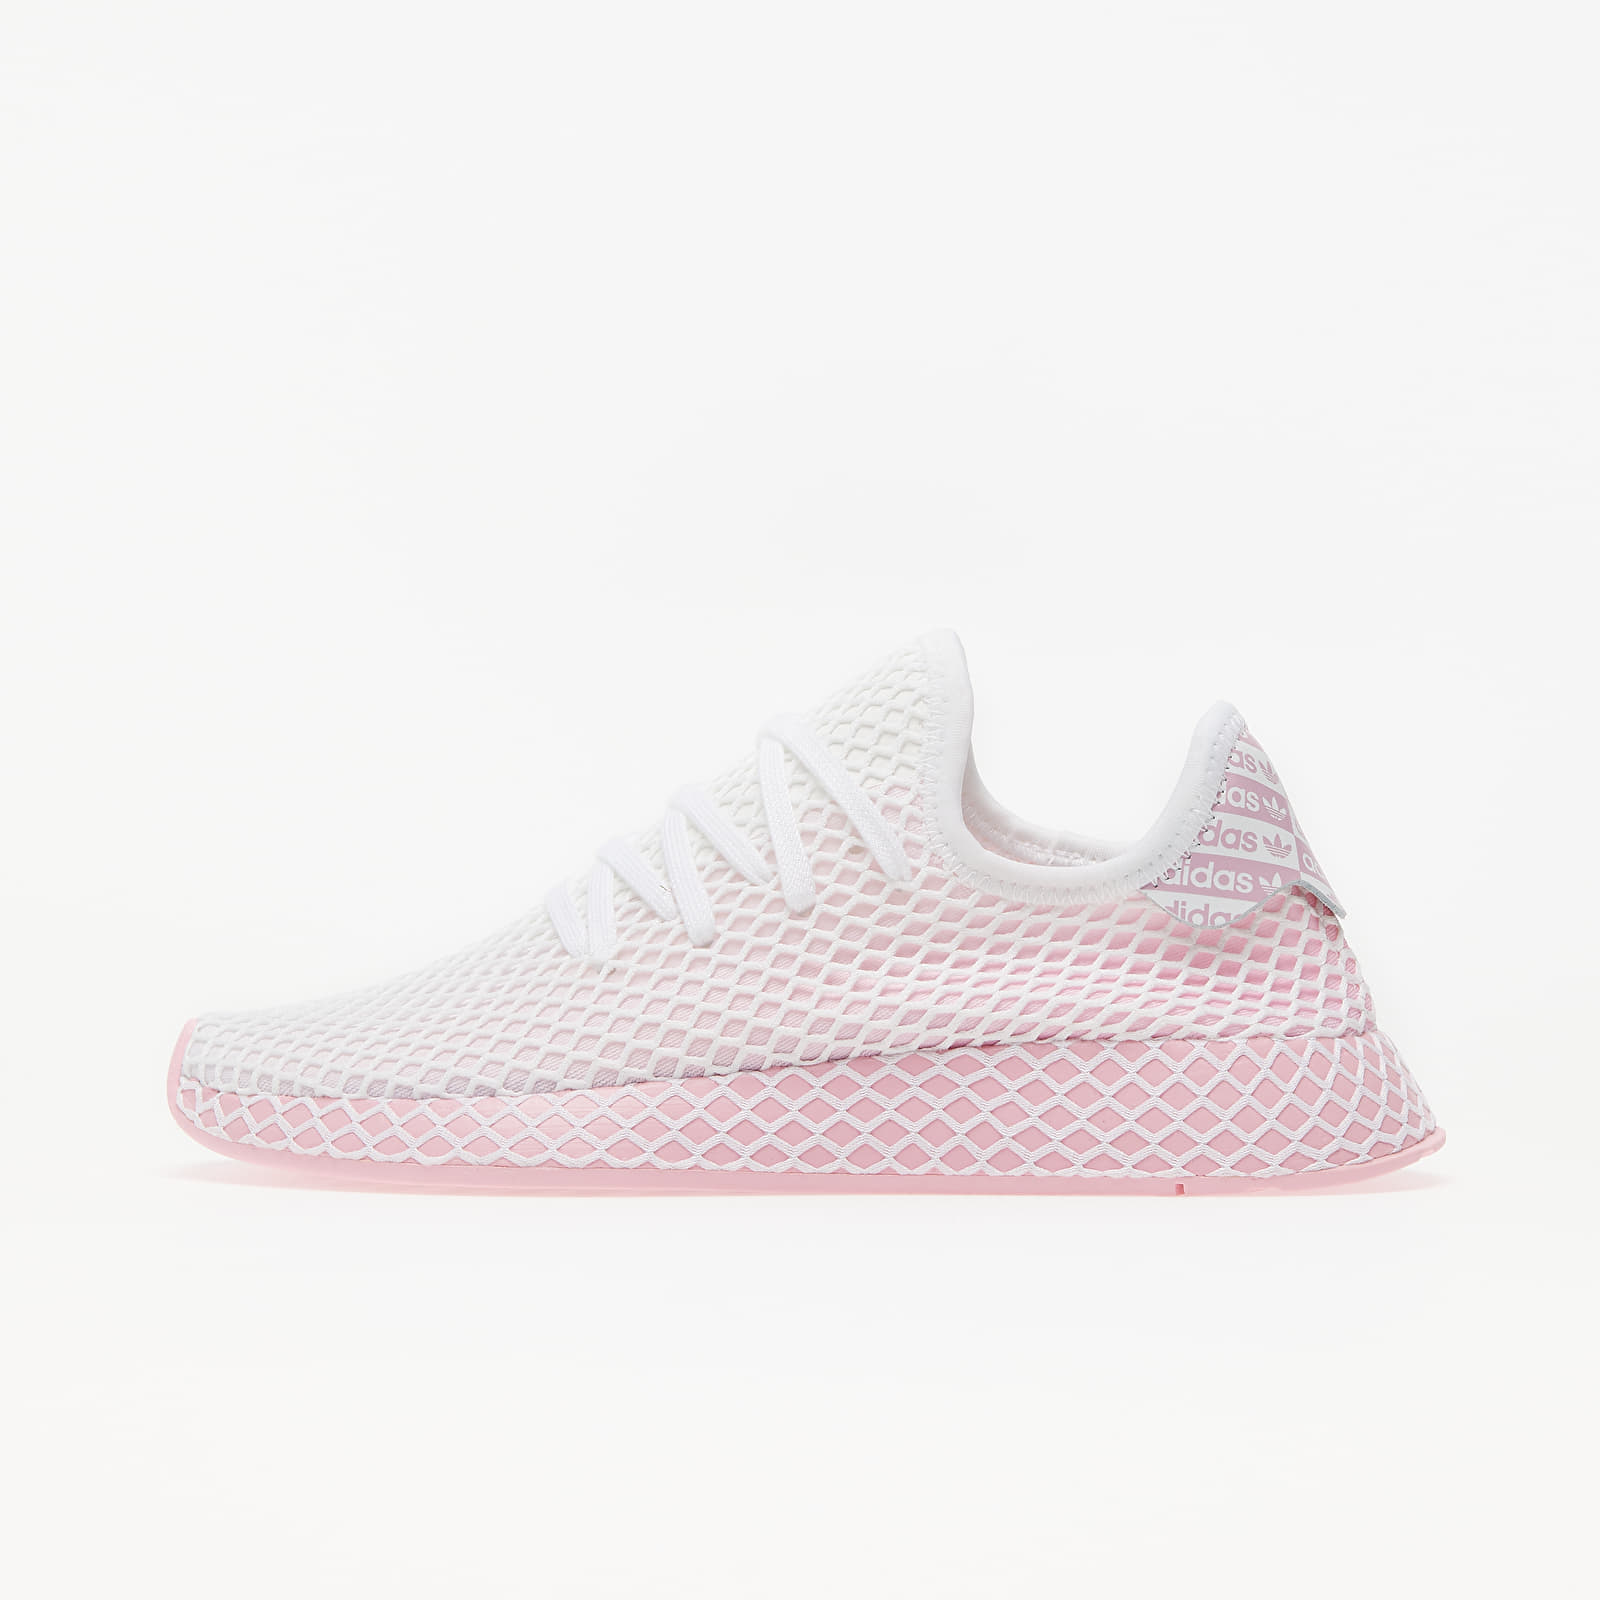 Chaussures et baskets femme adidas Deerupt Runner W True Pink/ True Pink/ Ftw White